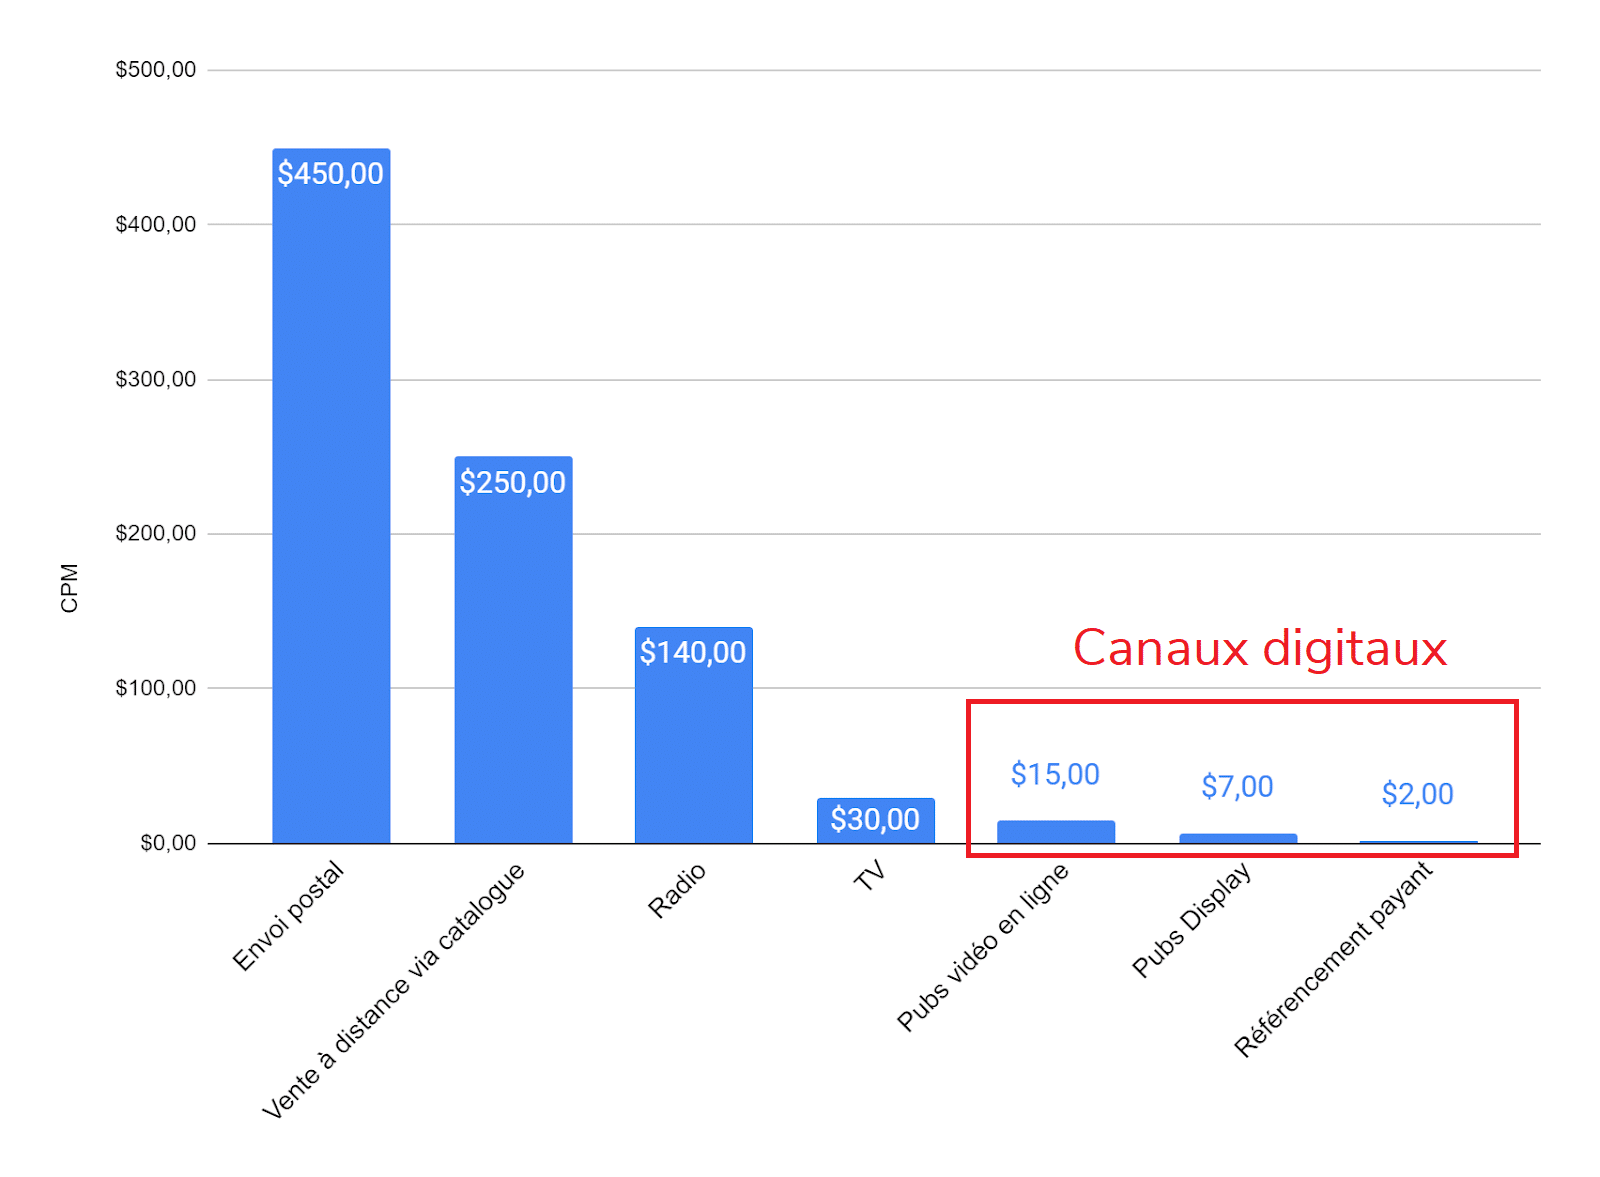 Comparaison des coûts publicitaires par canal de diffusion